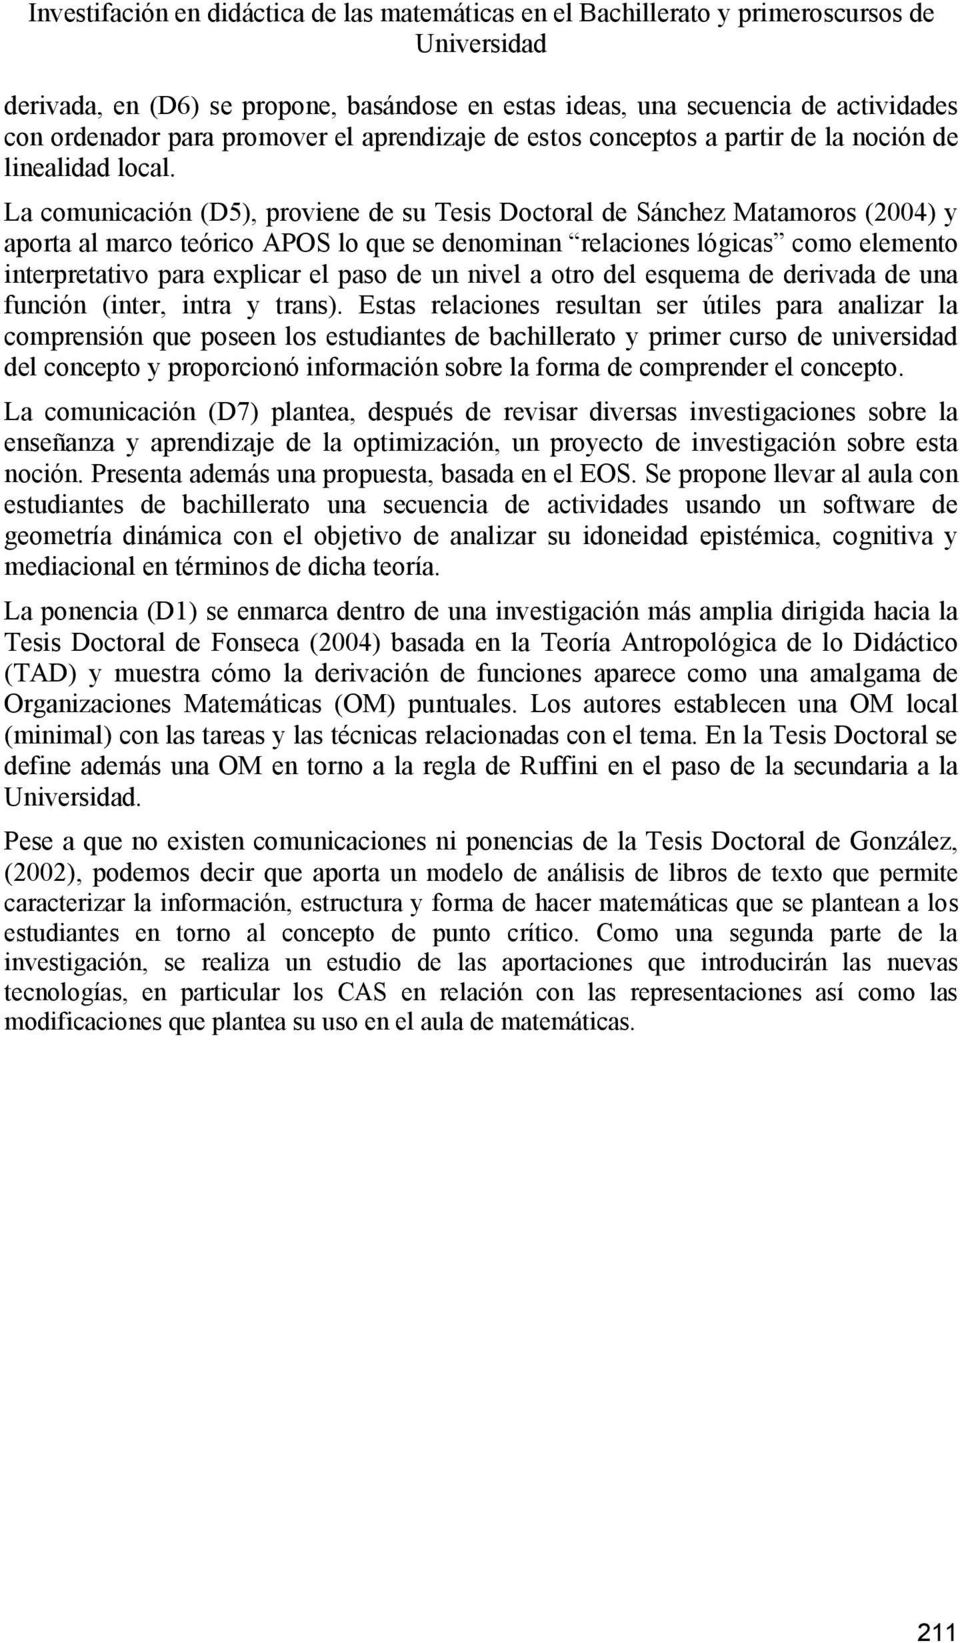 La comunicación (D5), proviene de su Tesis Doctoral de Sánchez Matamoros (2004) y aporta al marco teórico APOS lo que se denominan relaciones lógicas como elemento interpretativo para explicar el